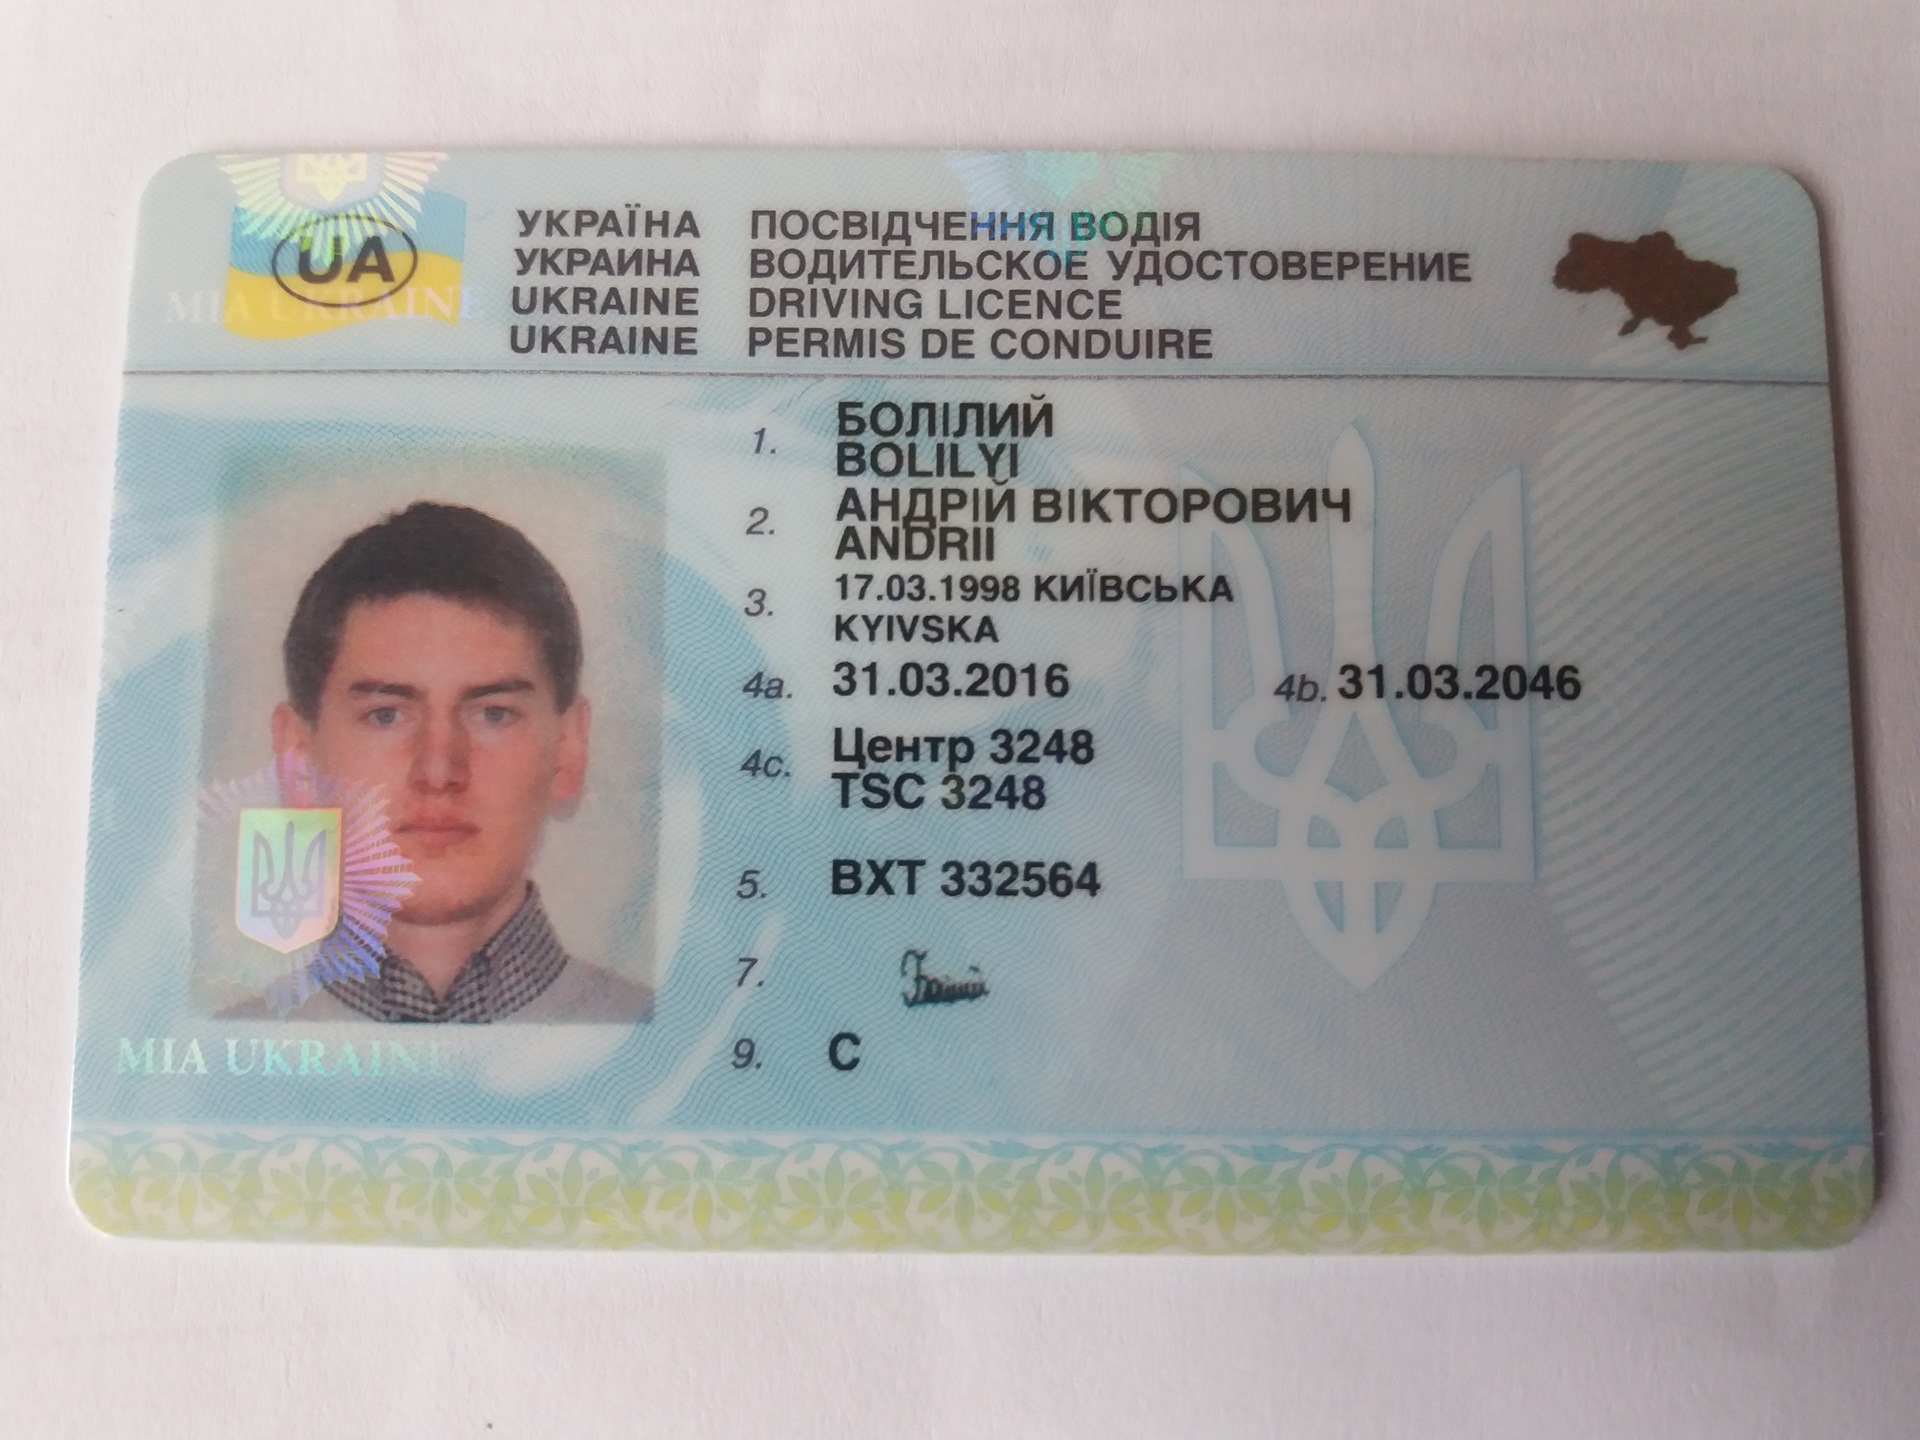 международное водительское удостоверение фото нового образца